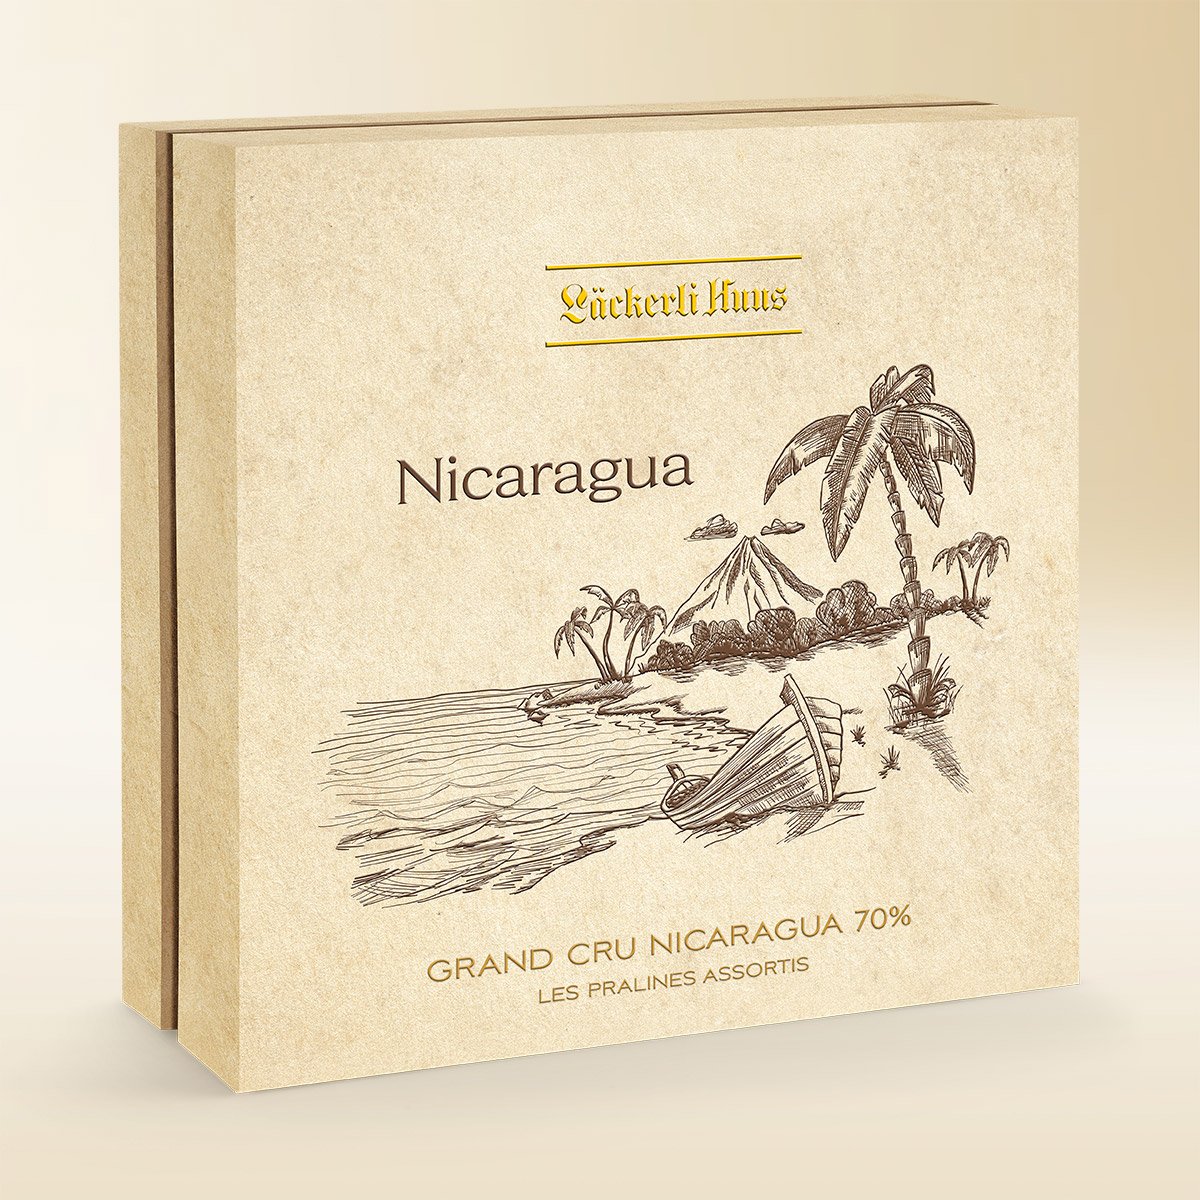 Grand Cru Nicaragua 70% - Les pralinés assortis 94g